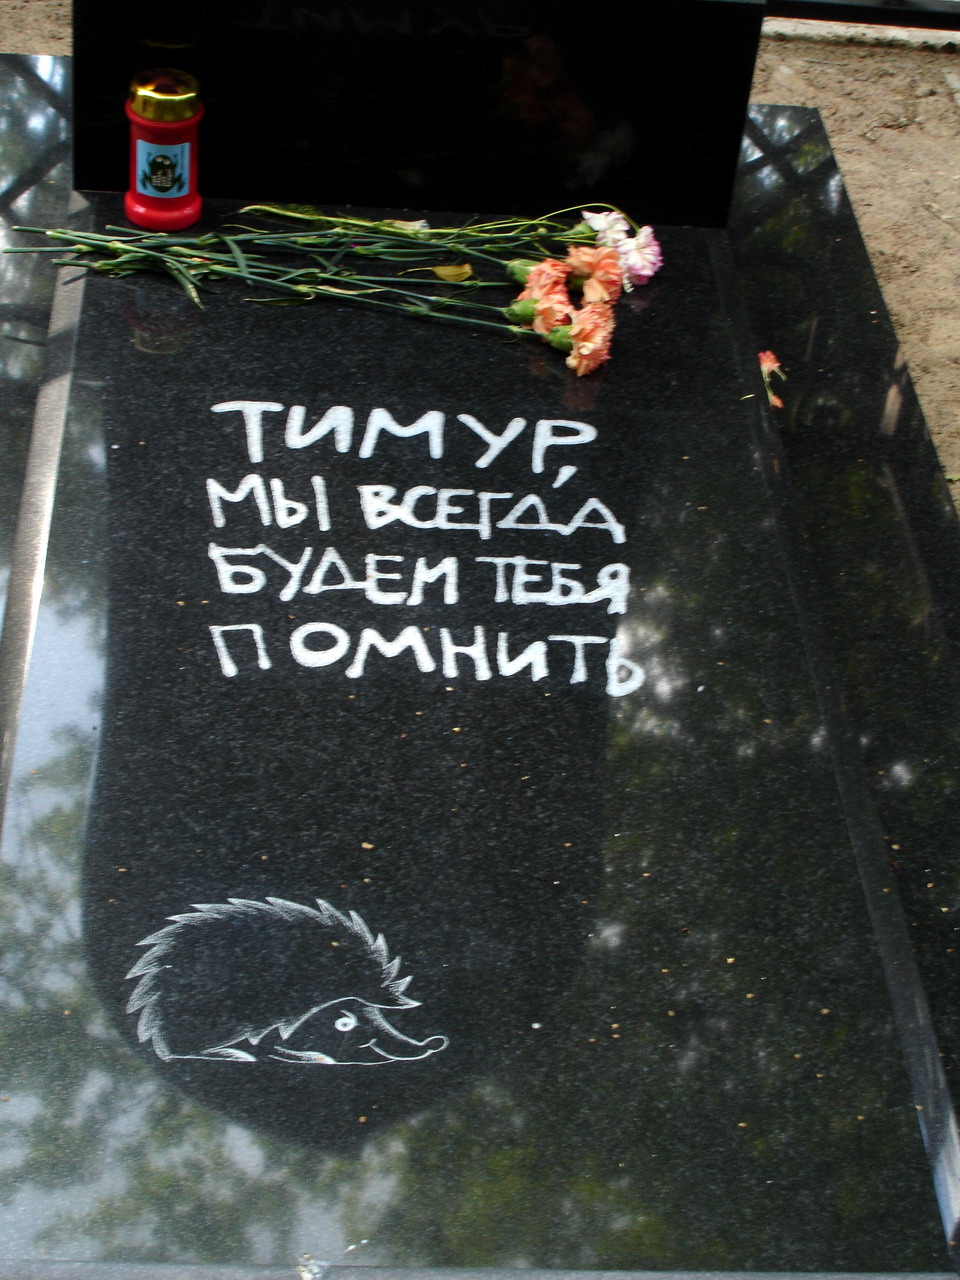 Могила Качарава Т.В. на Стрельнинском кладбище